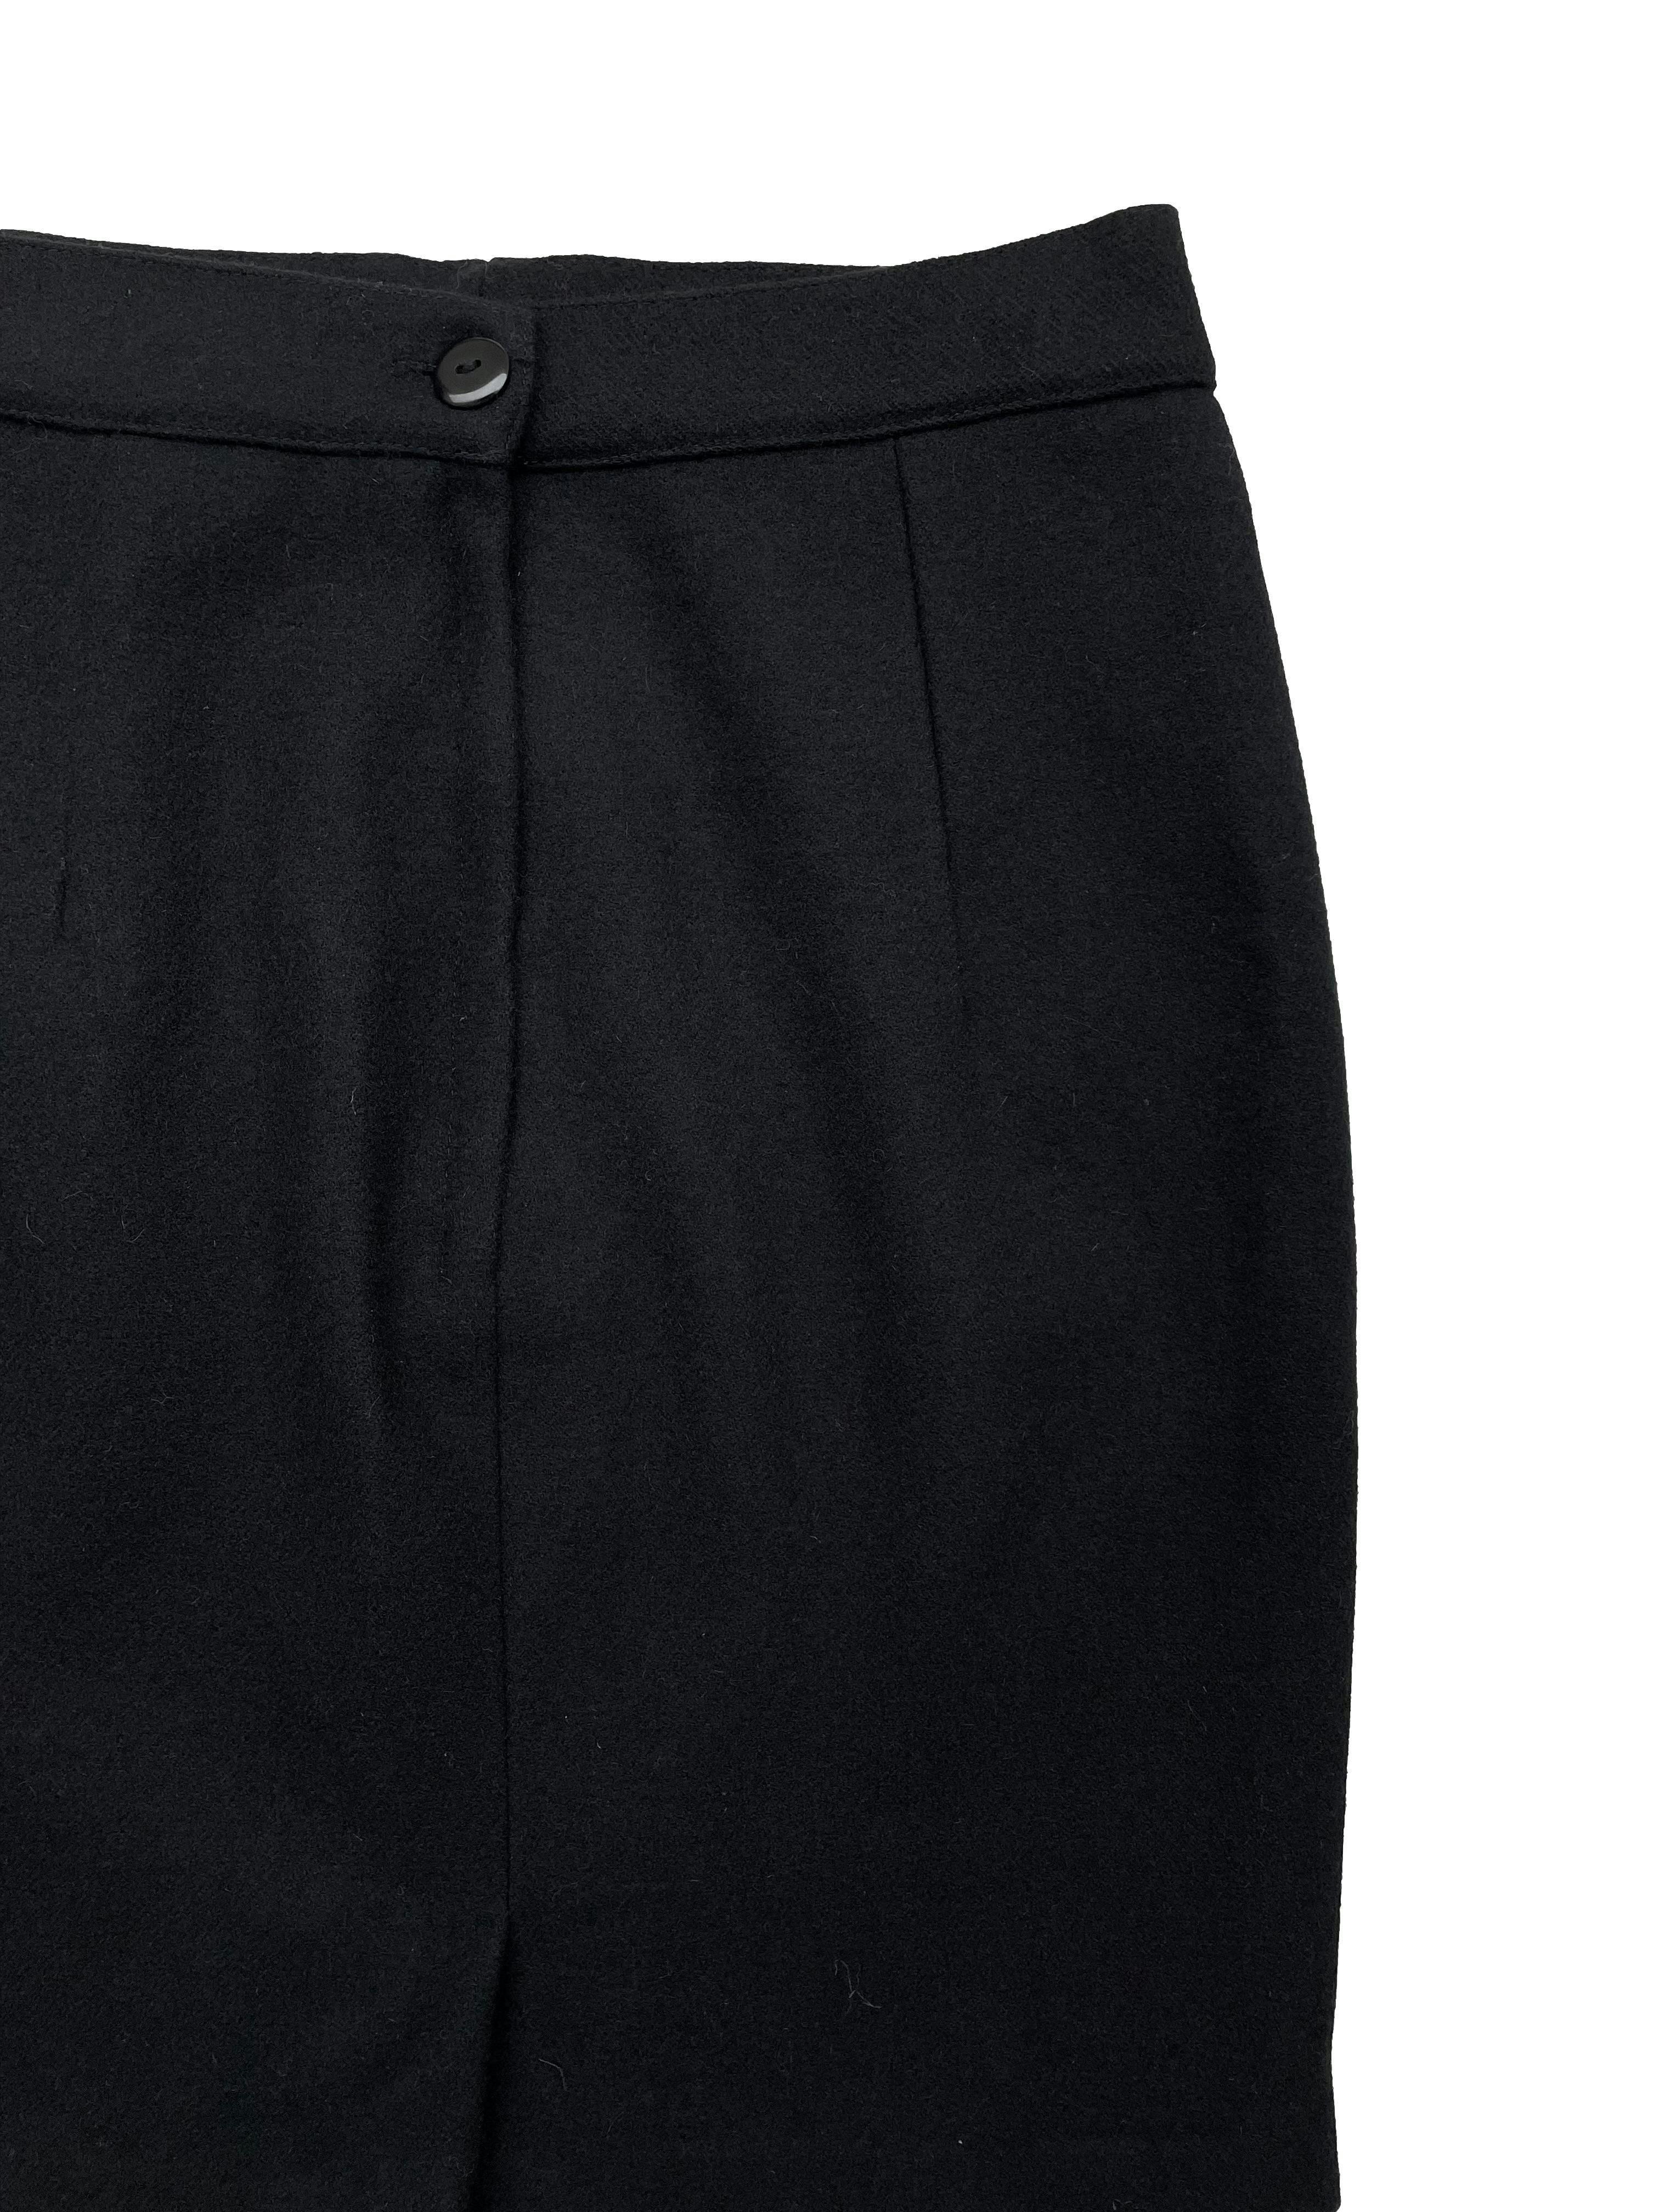 Falda de paño negro, forrada, con botón y cierre posteriores. Cintura 70cm Cadera 94cm Largo 47cm